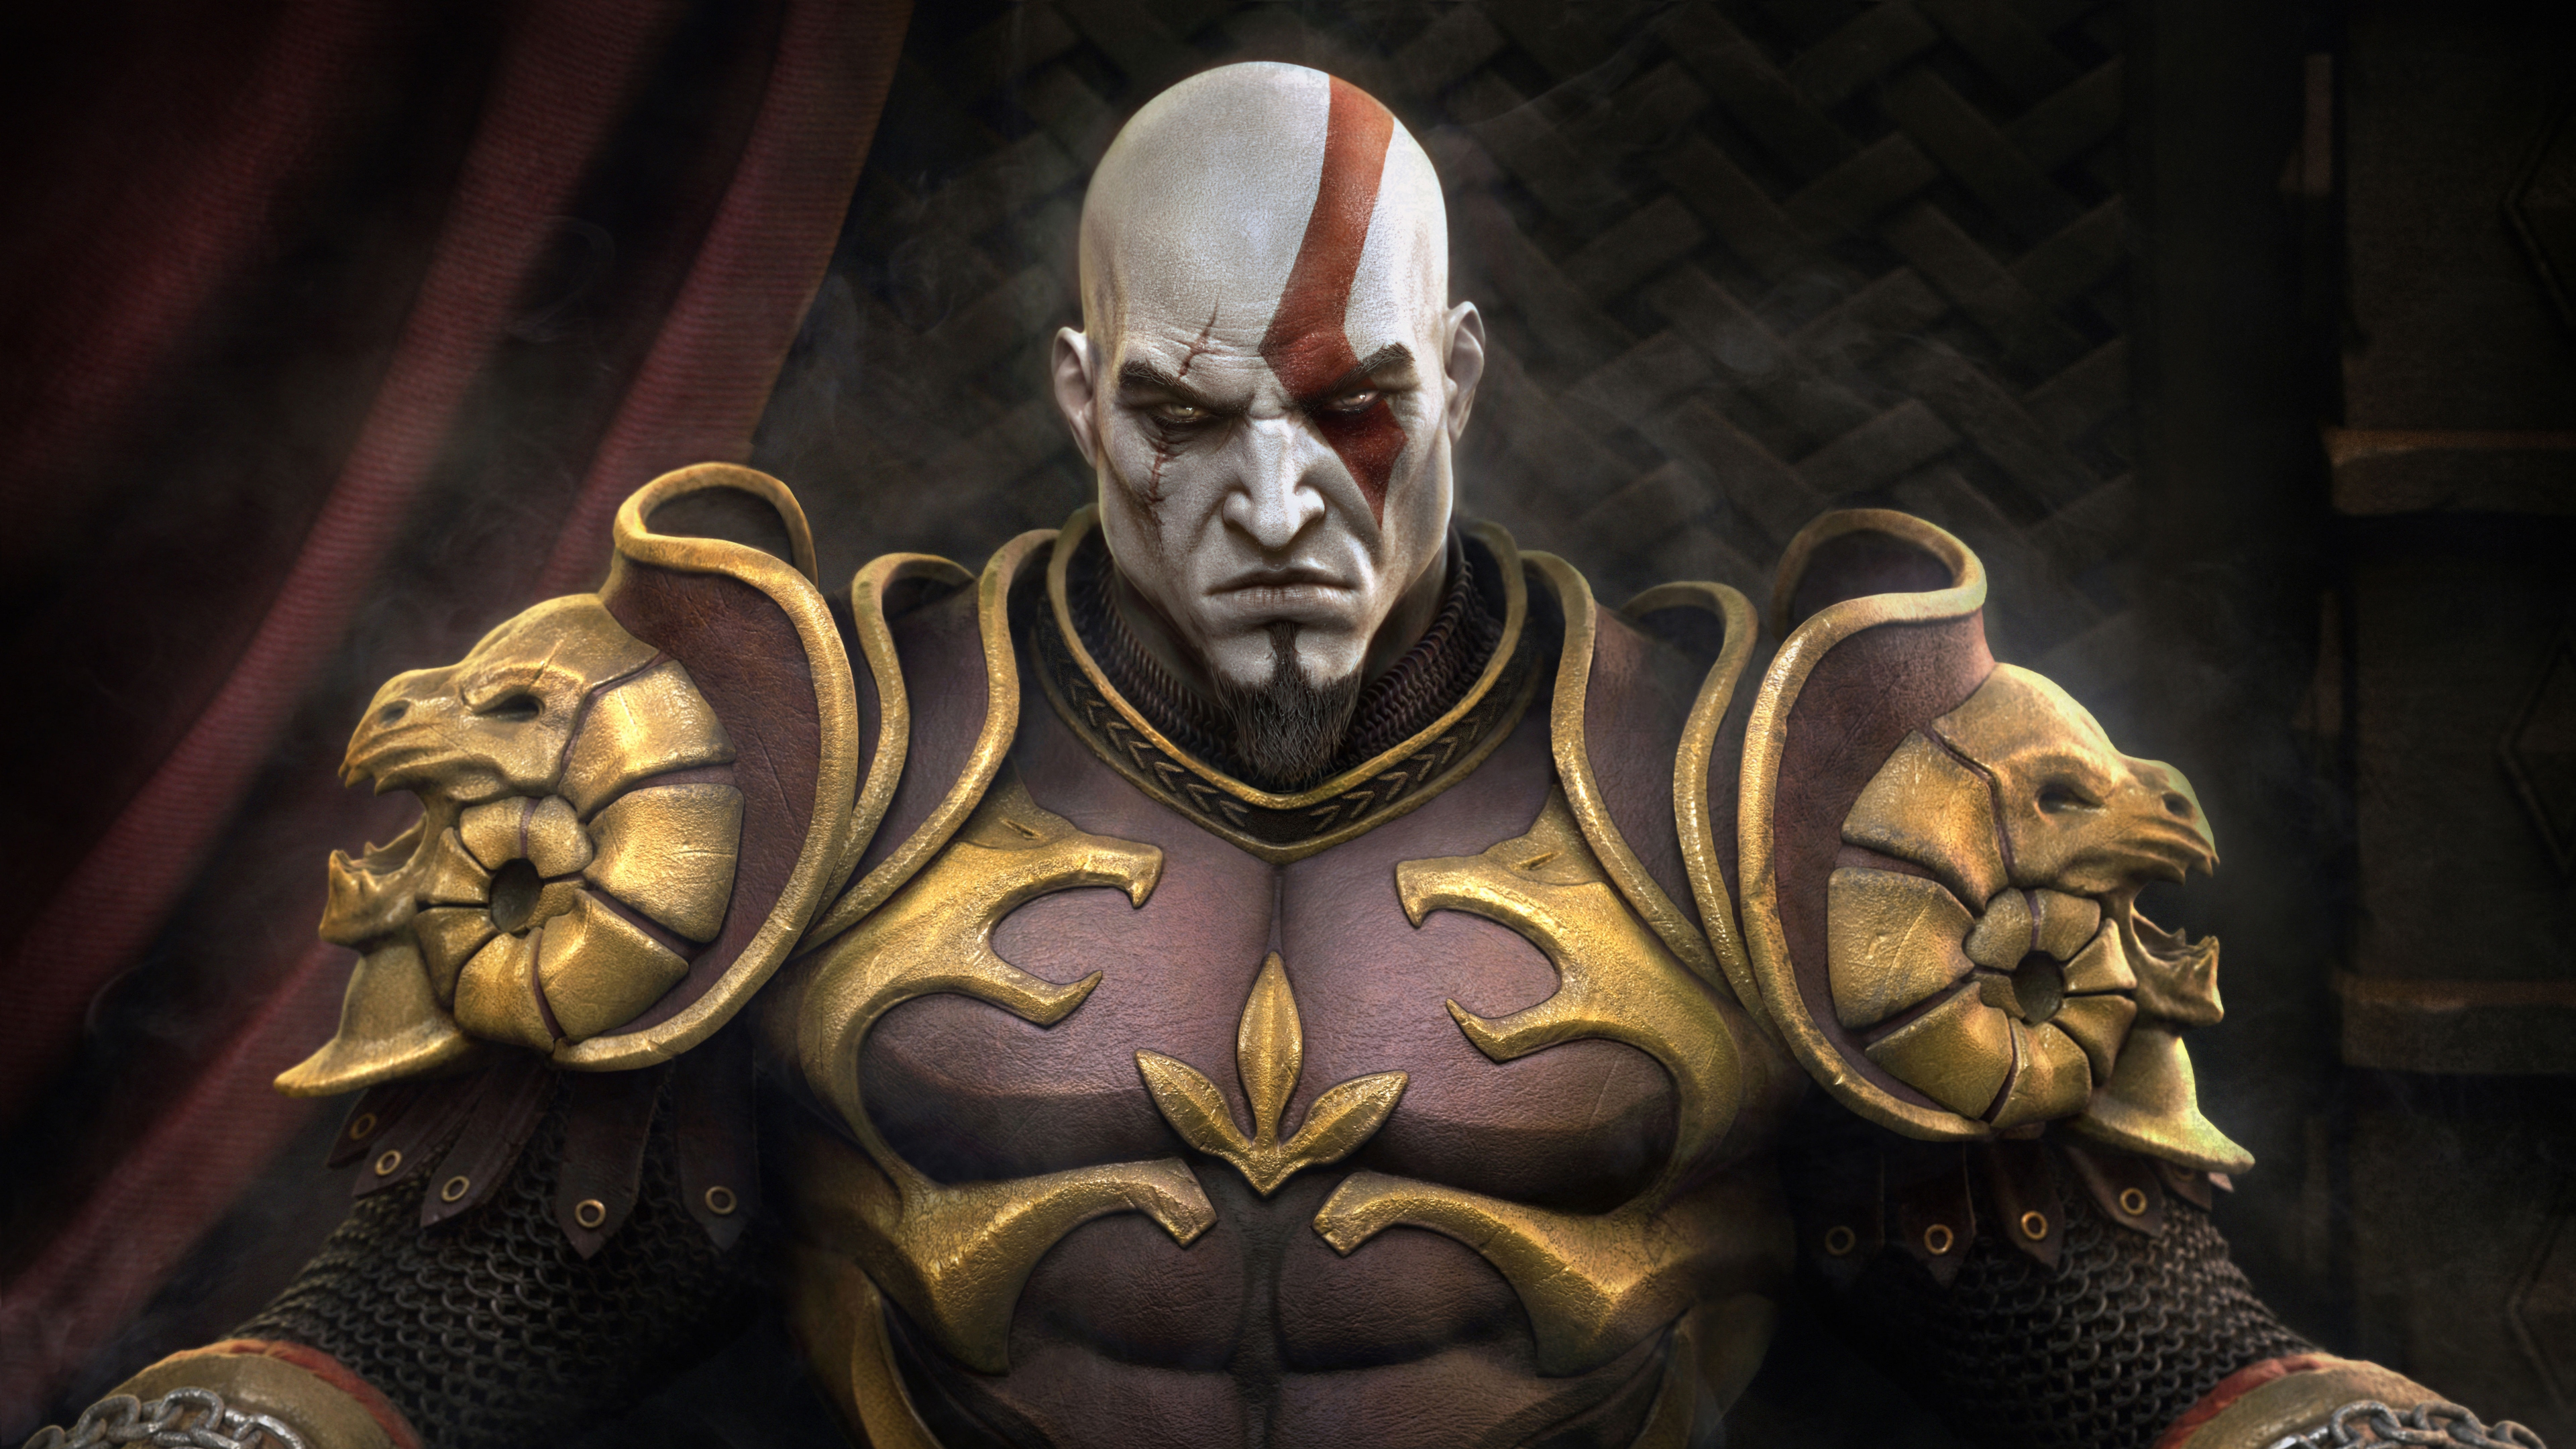 Với Kratos Throne Wallpaper, bạn sẽ được chiêm ngưỡng đội vương giả của vị thần chiến tranh này. Vòng qua vị trí của người chiến thắng tất cả, hình ảnh này thật sự là một tác phẩm nghệ thuật đích thực. Ngồi trên ngai vàng với vẻ đầy uy lực, Kratos sẽ khiến bạn cảm thấy như mình đang ở giữa một thế giới của quyền lực và truyền thống.